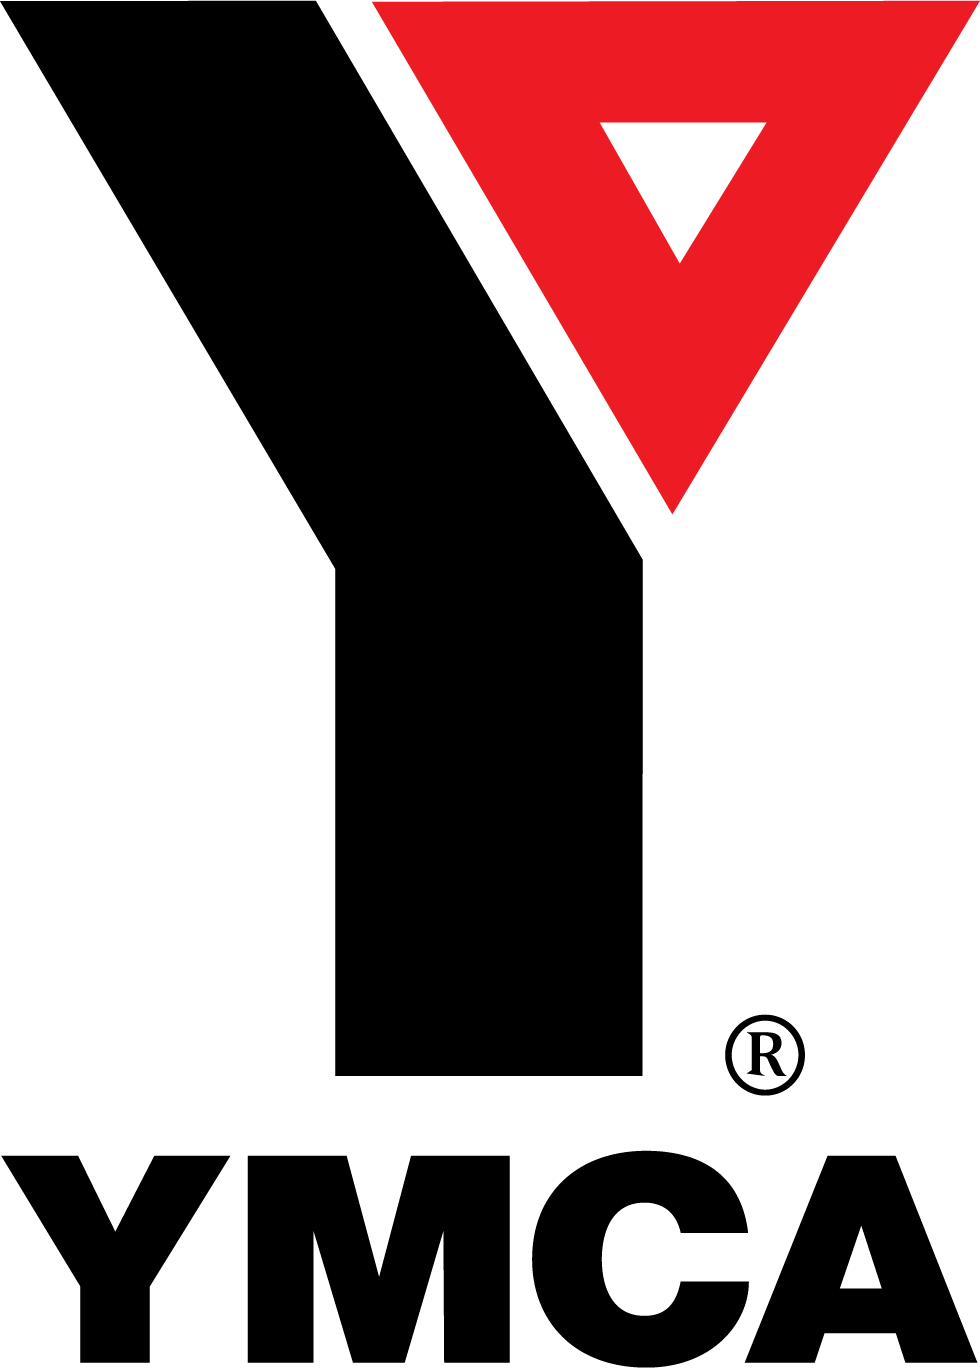 New YMCA Logo - YMCA National to the YMCA